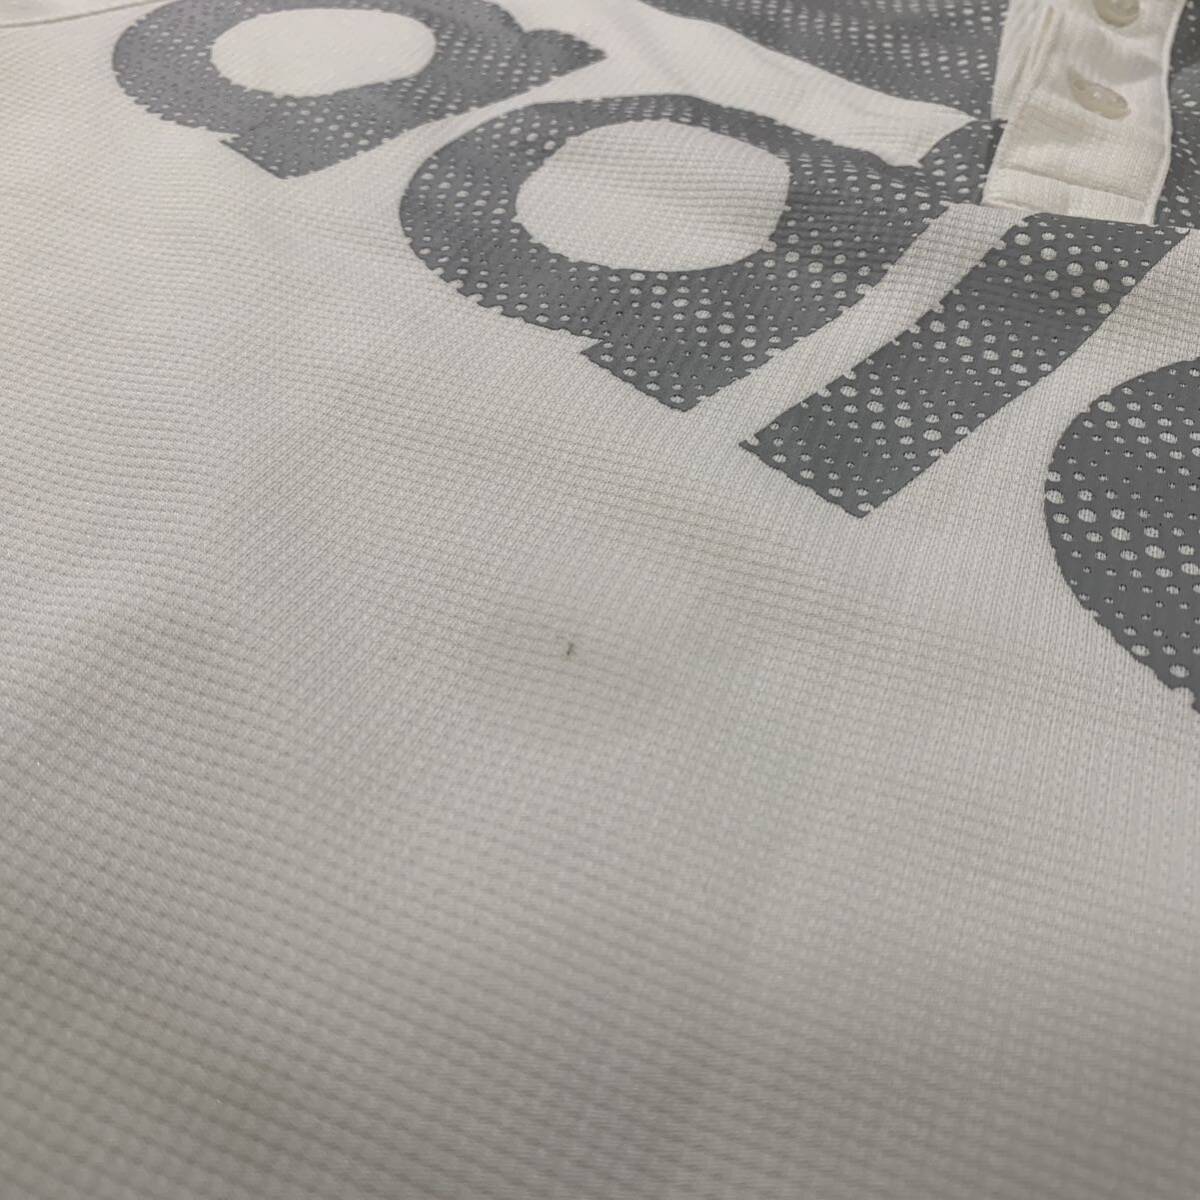 【adidas GOLFアディダスゴルフ】半袖 ポロシャツ メンズ デカロゴ サイズO LLサイズ 白 ホワイト ラグランスリーブ ゴルフウェア DRY 速乾_画像7